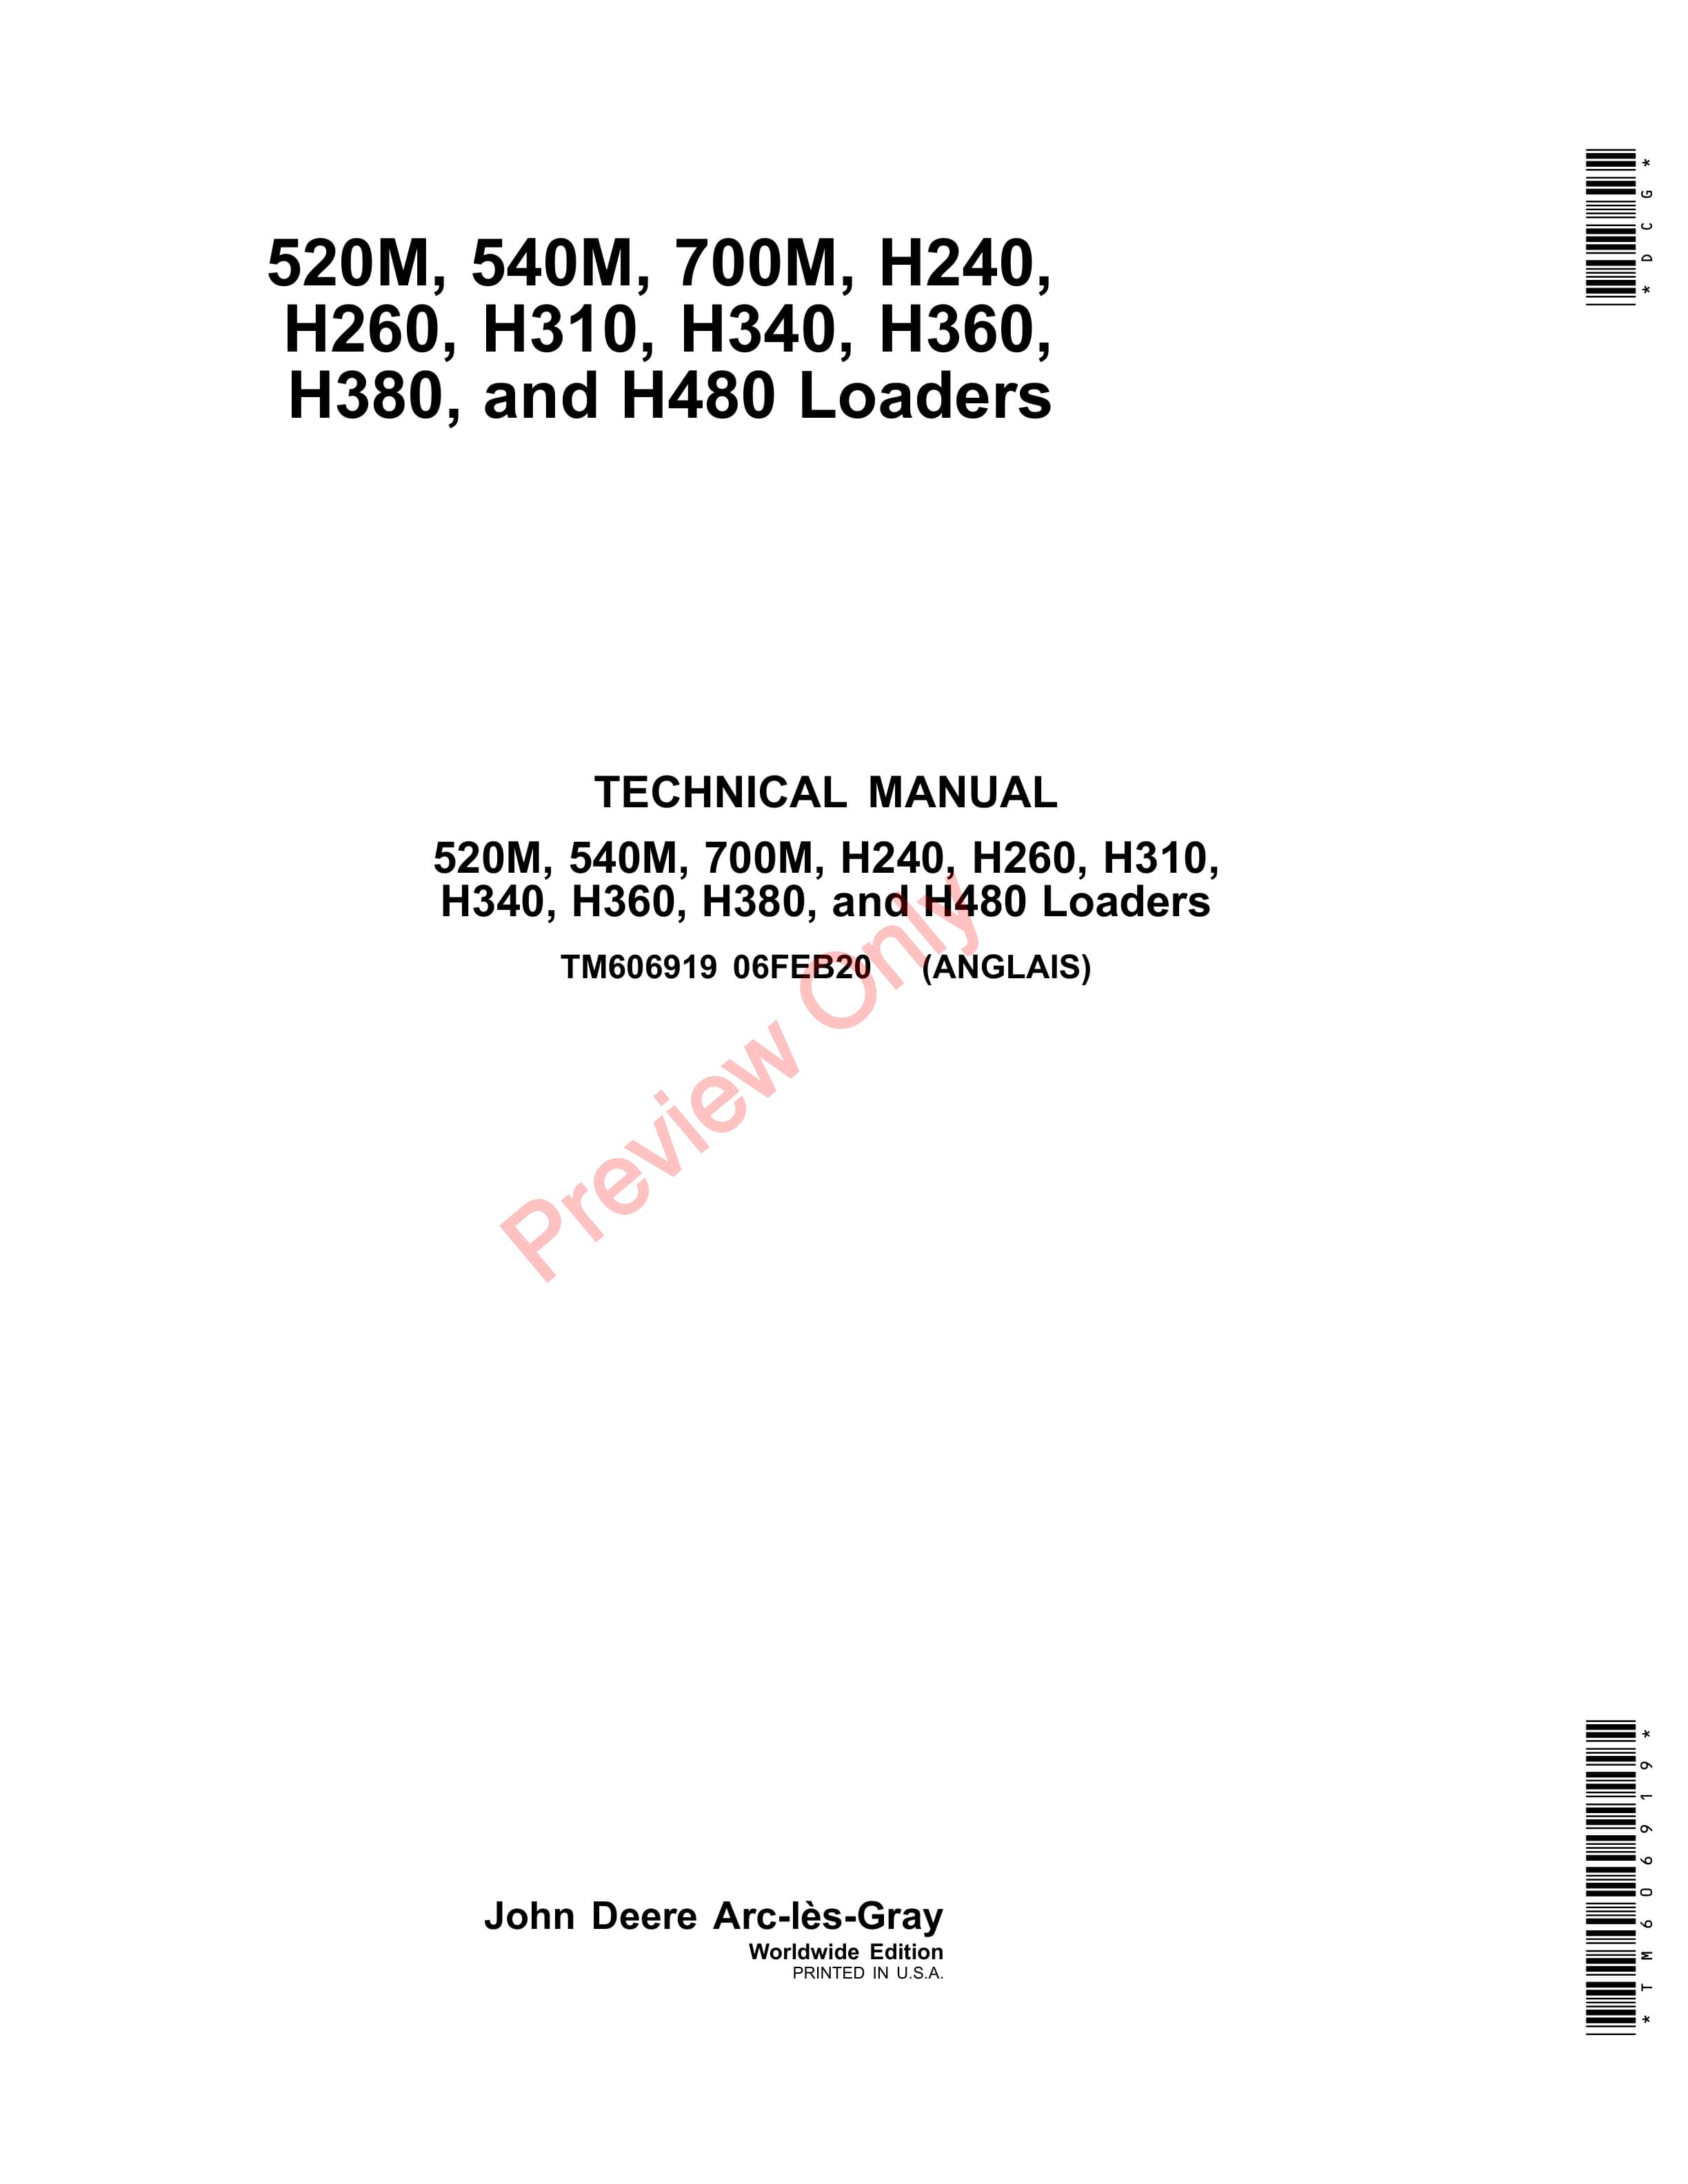 John Deere 520M 540M 700M H240 H260 H310 H340 H360 H380 and H480 Loaders Technical Manual TM606919 06FEB20 1